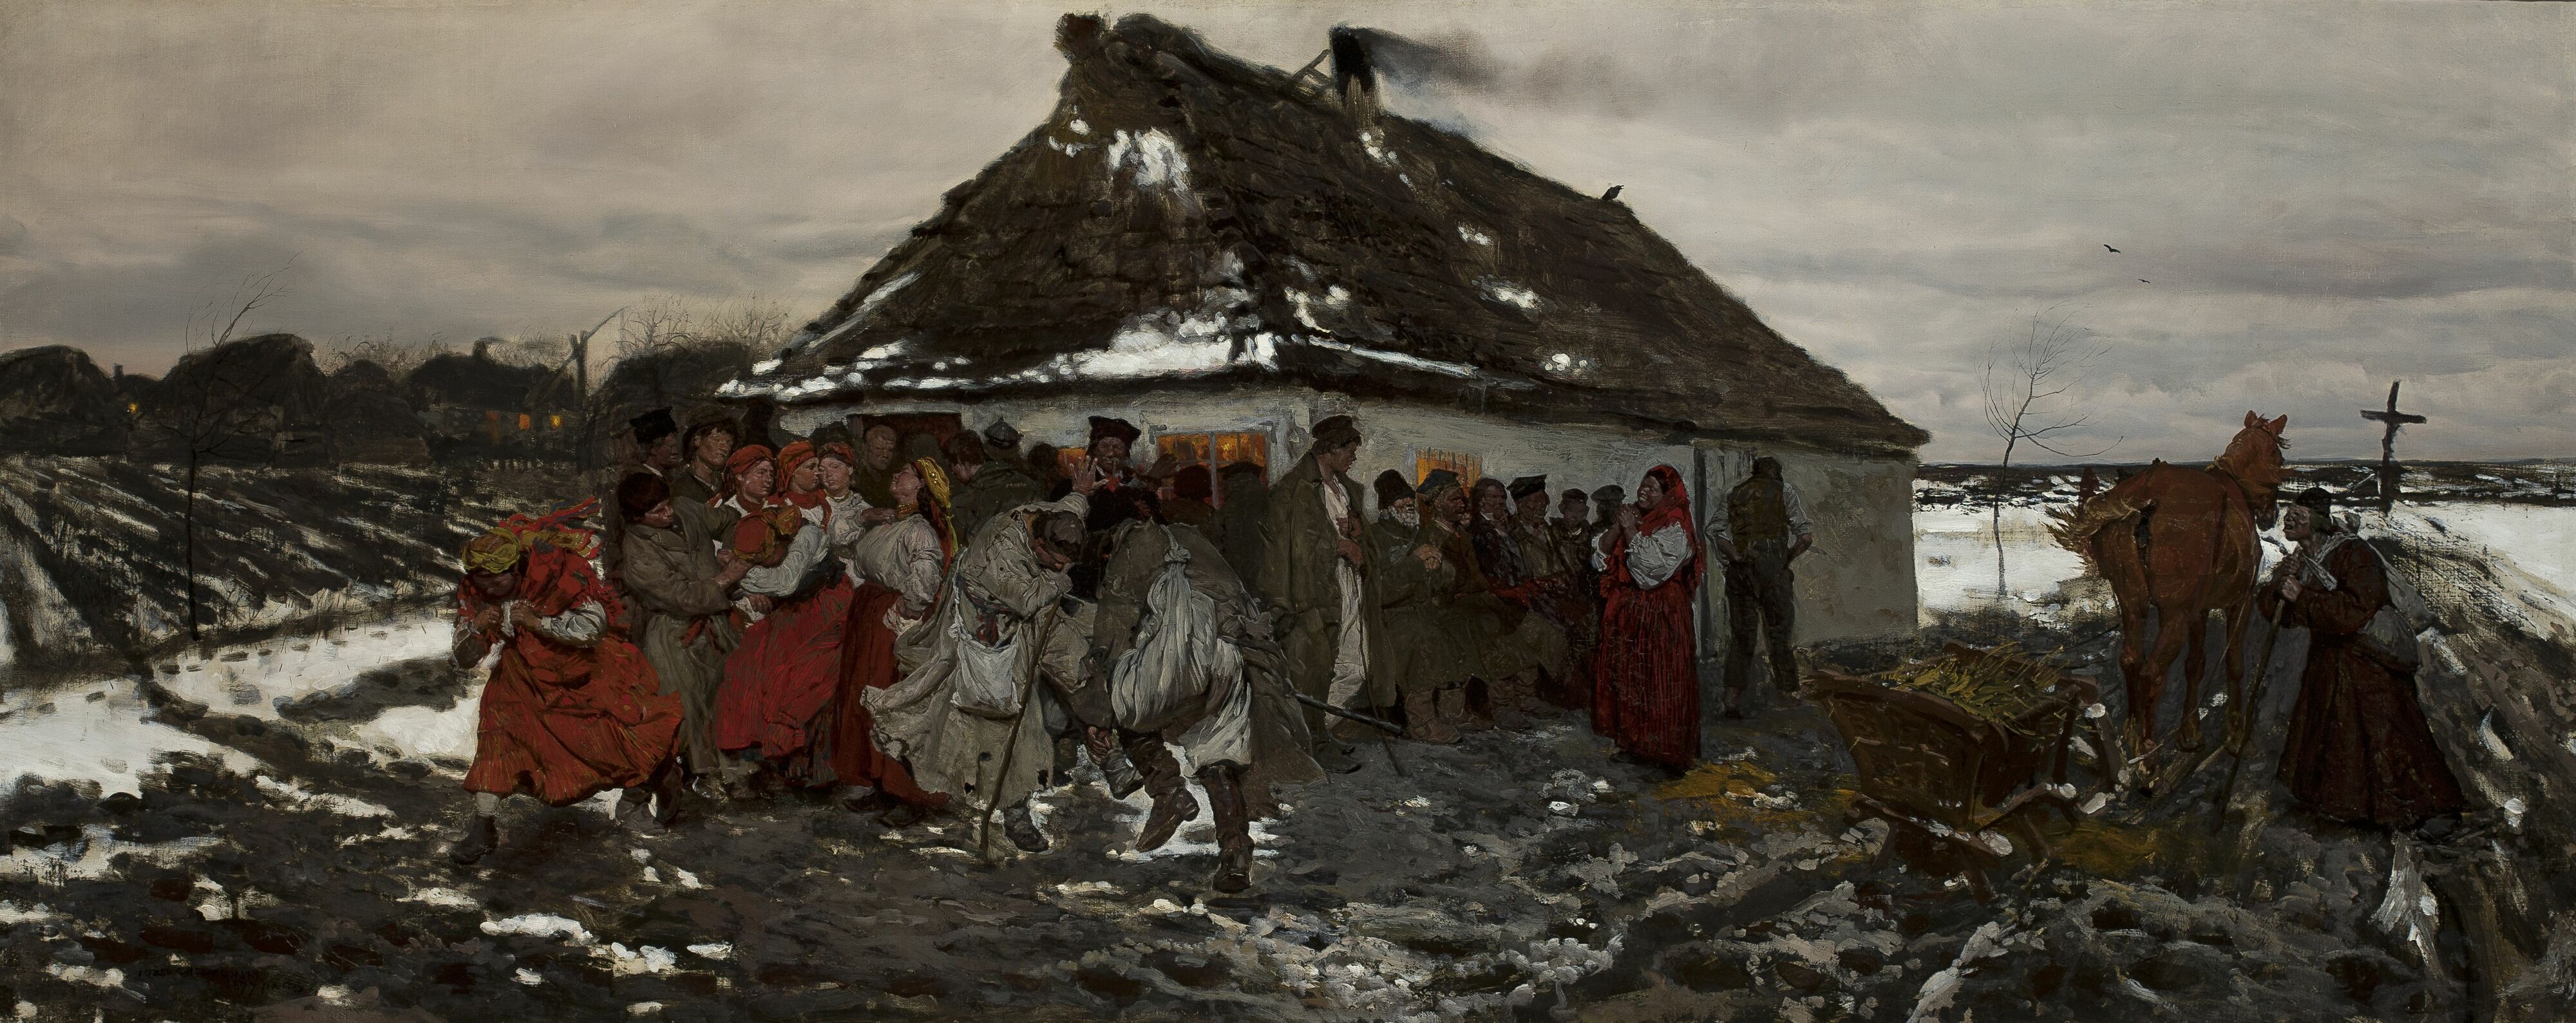 Józef Chełmoński (1849-1914) "Przed karczmą", 1877 rok, źródło: Muzeum Narodowe w Warszawie